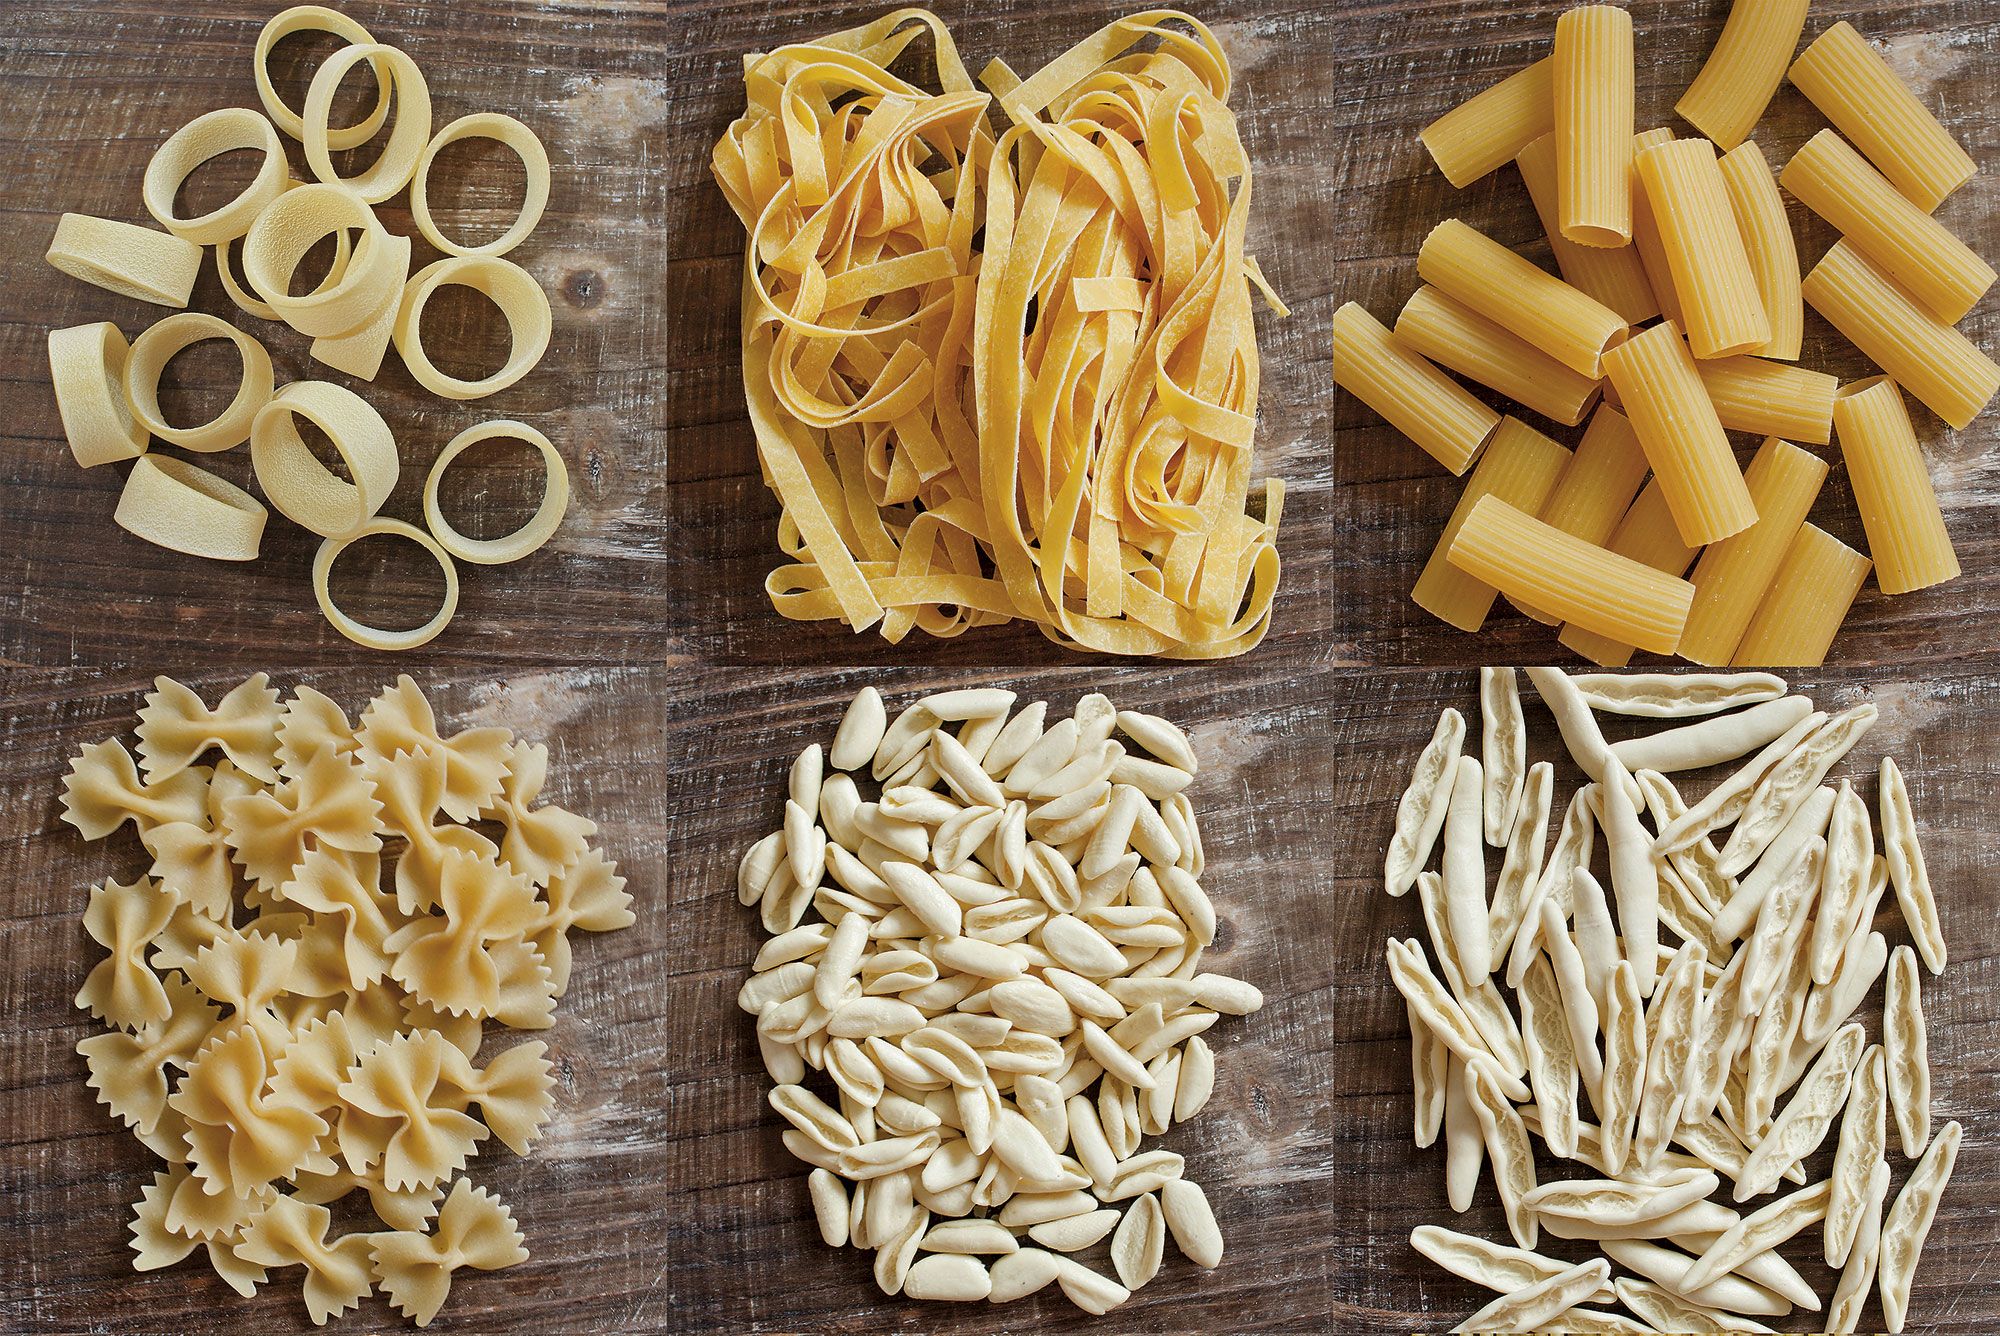 Fin de semana a la italiana: cinco máquinas para hacer pasta